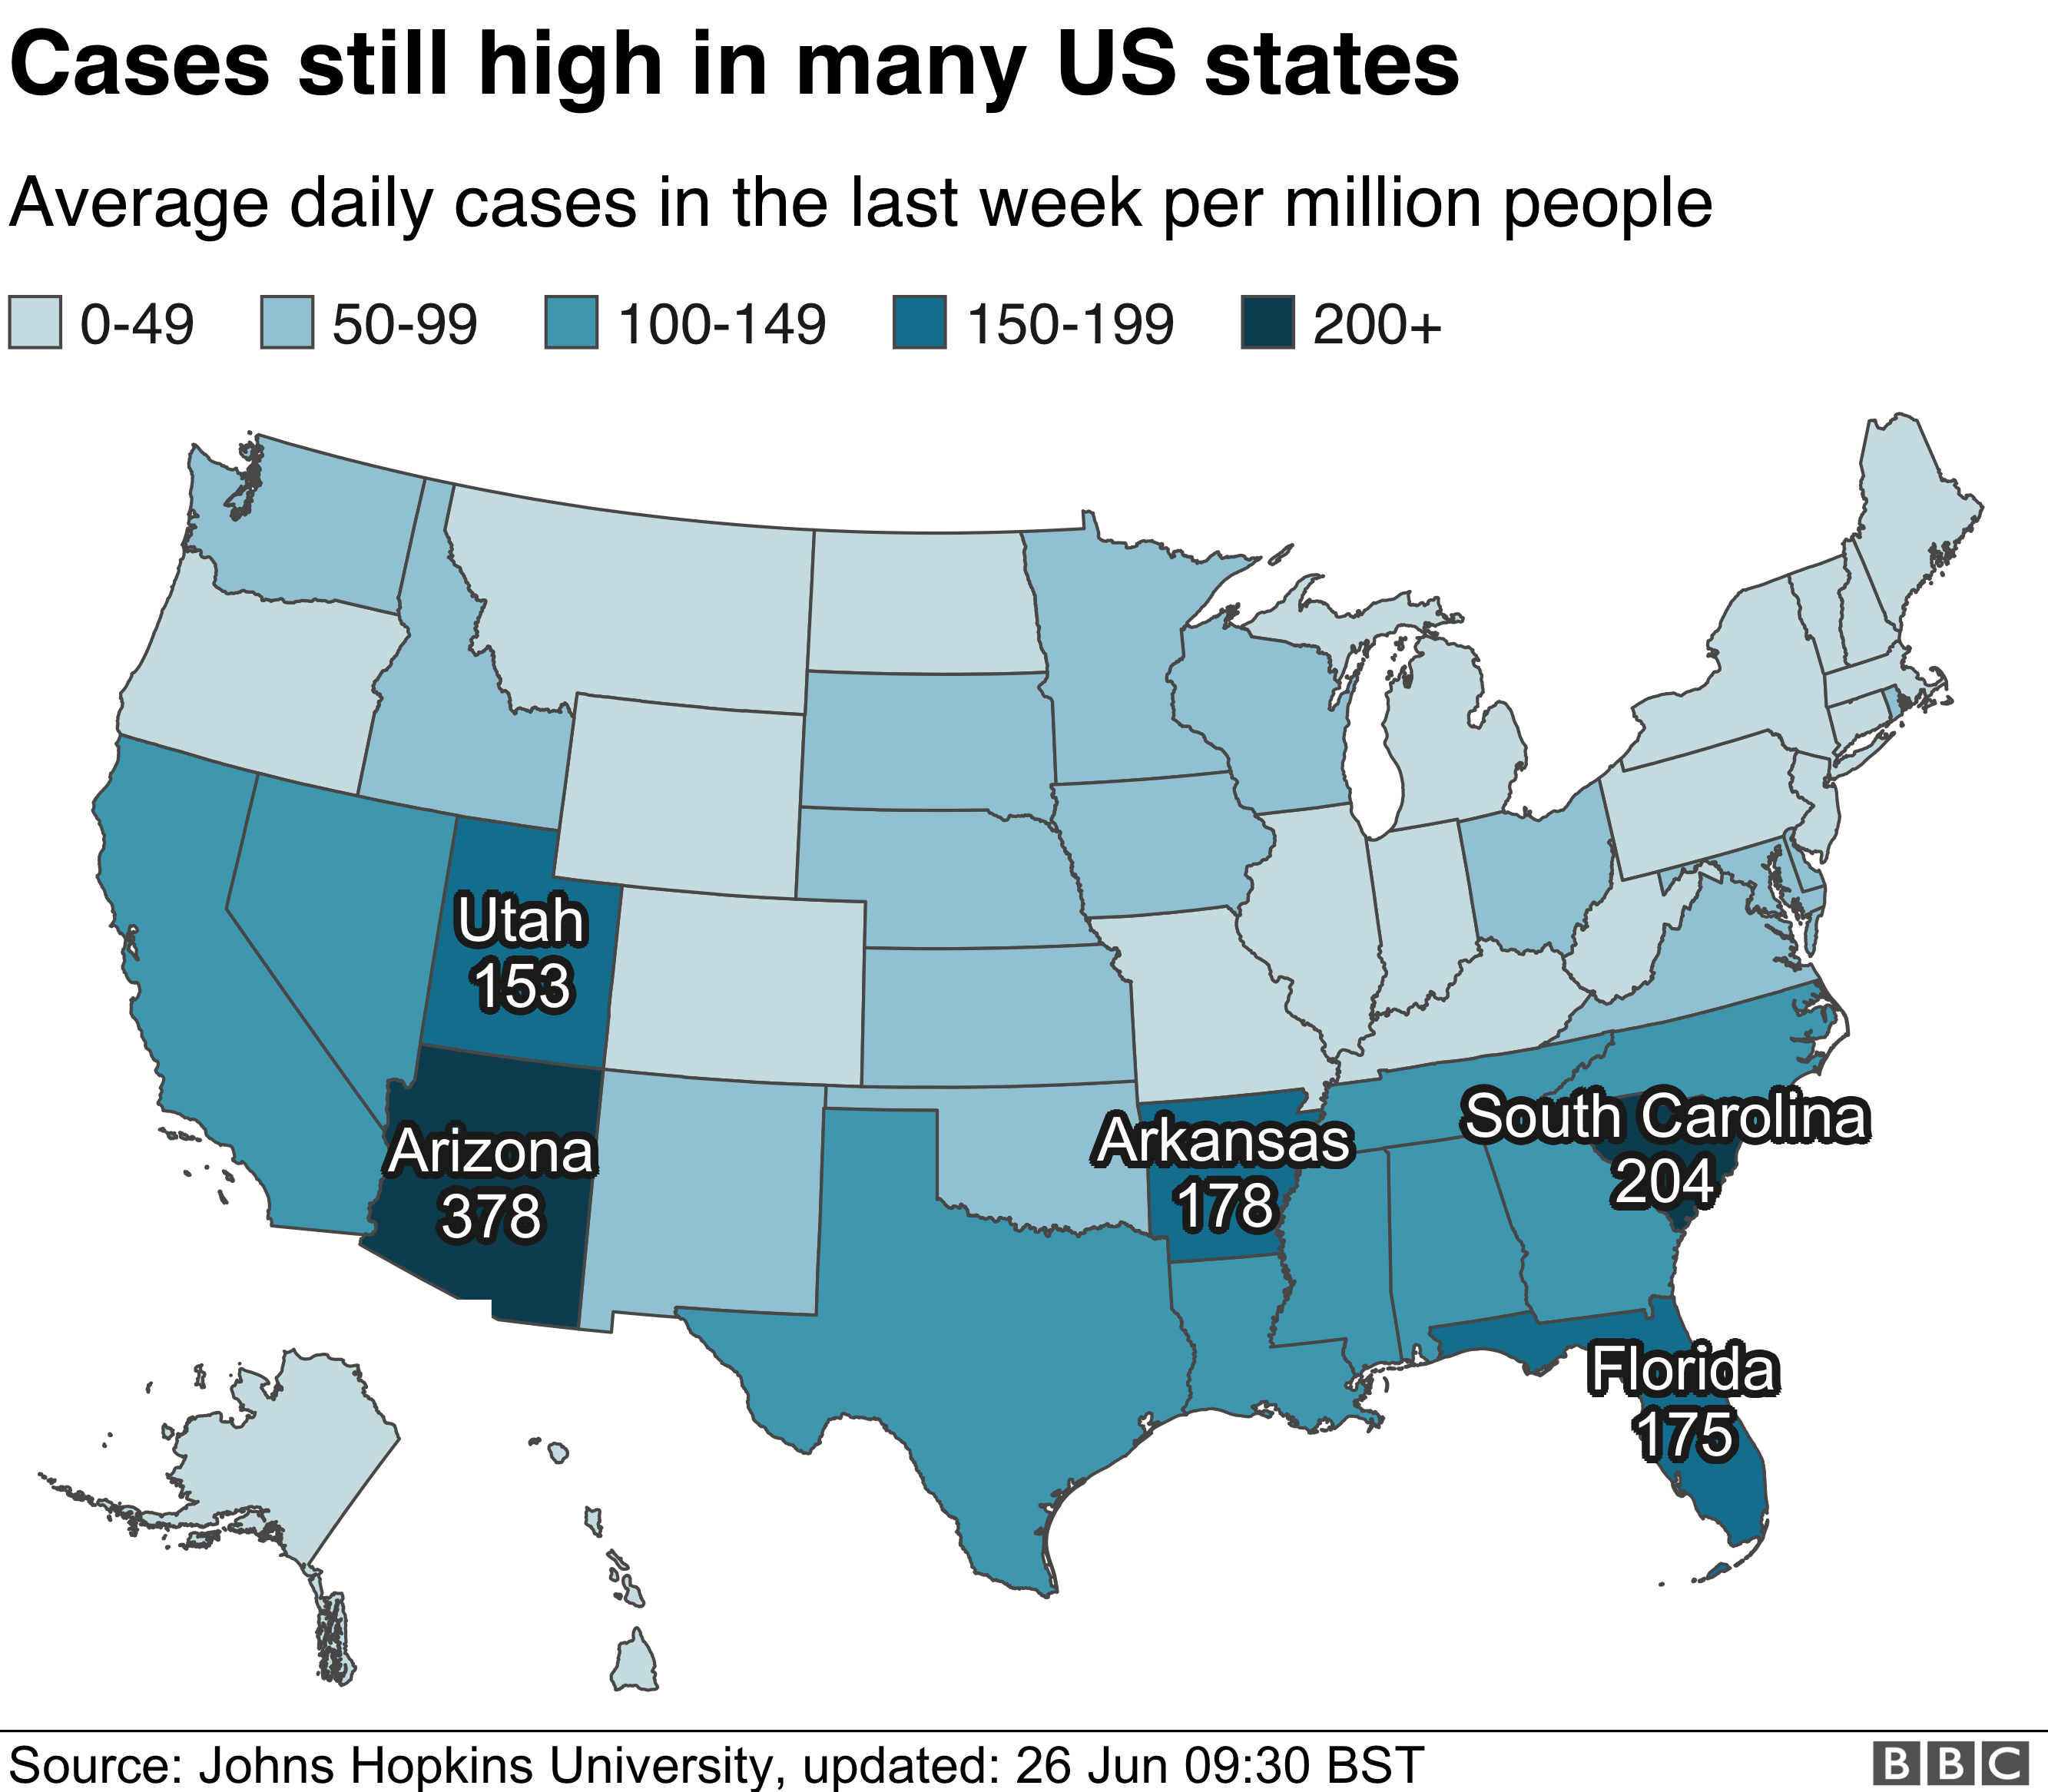 Карта, показывающая средние ежедневные случаи заболевания на миллион человек в штатах США за последнюю неделю